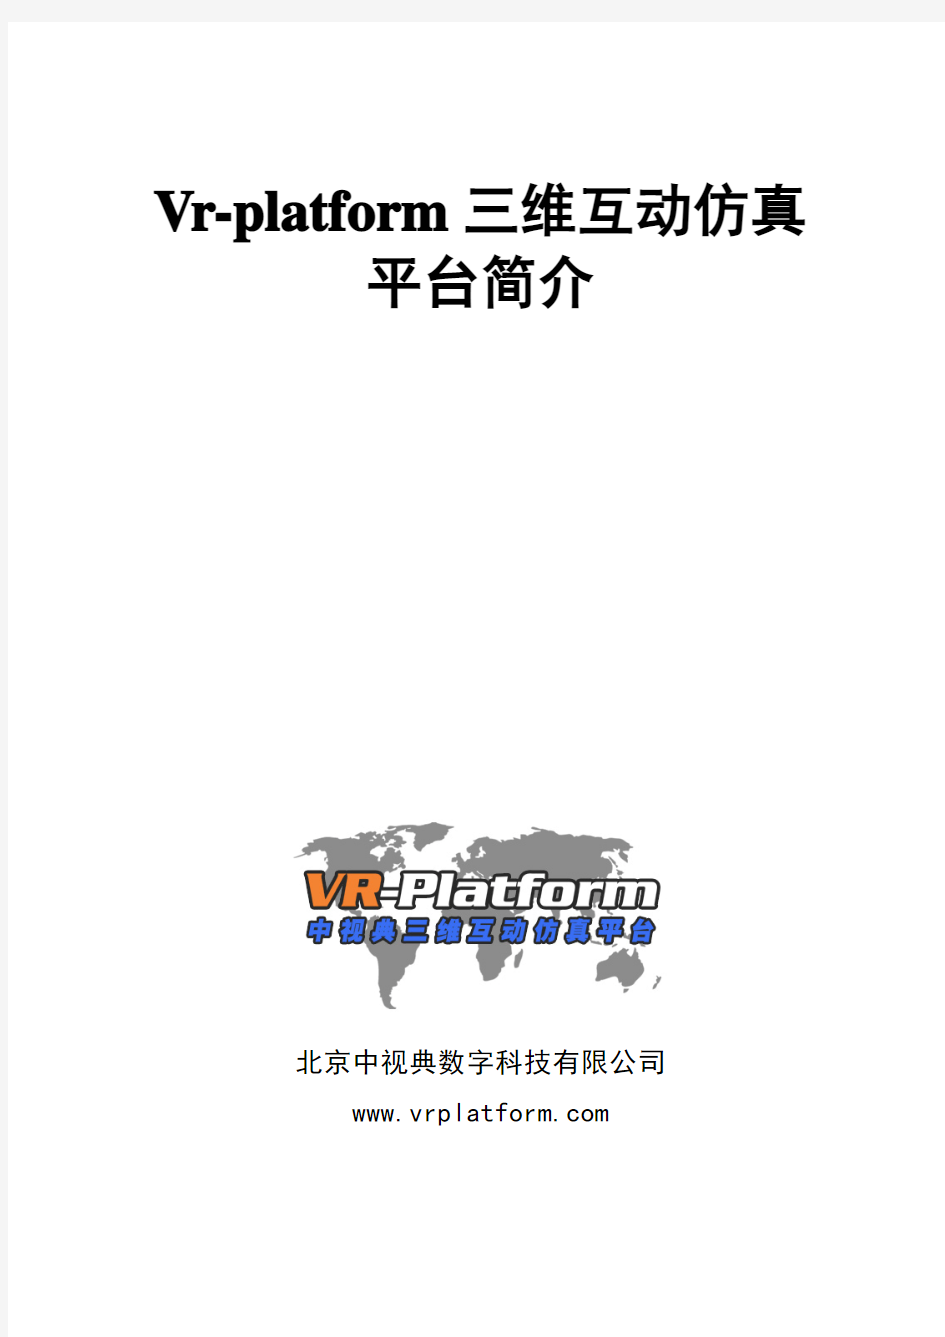 中视典—vr-platform三维互动仿真平台简介